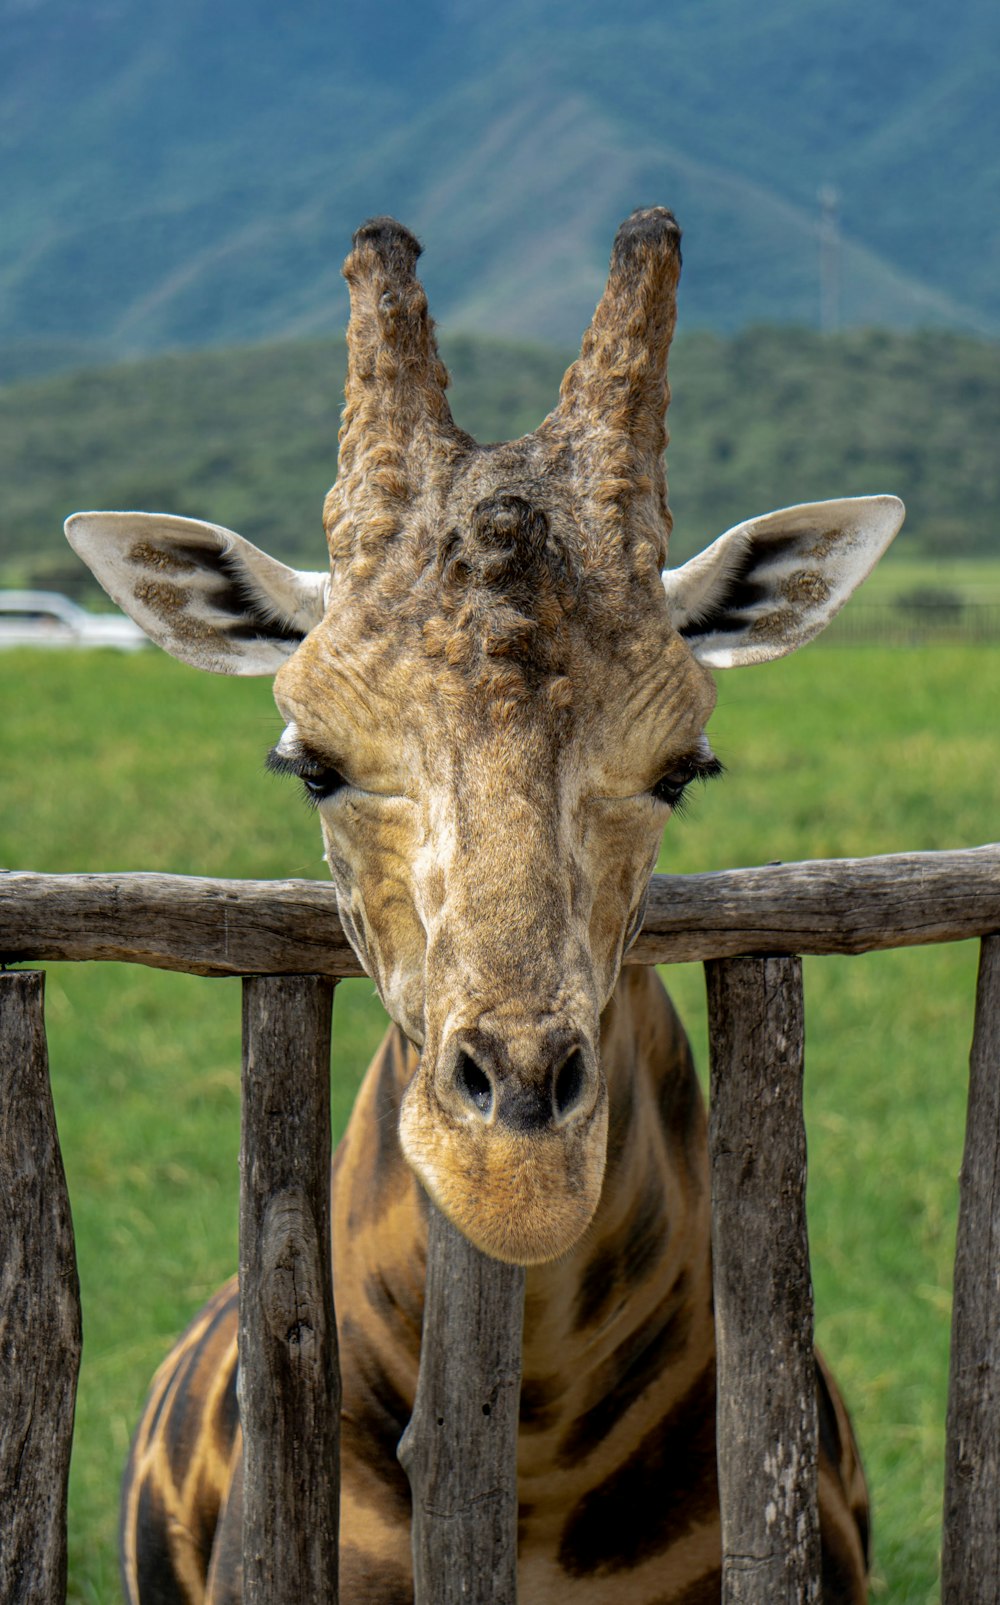 a giraffe standing next to a wooden fence